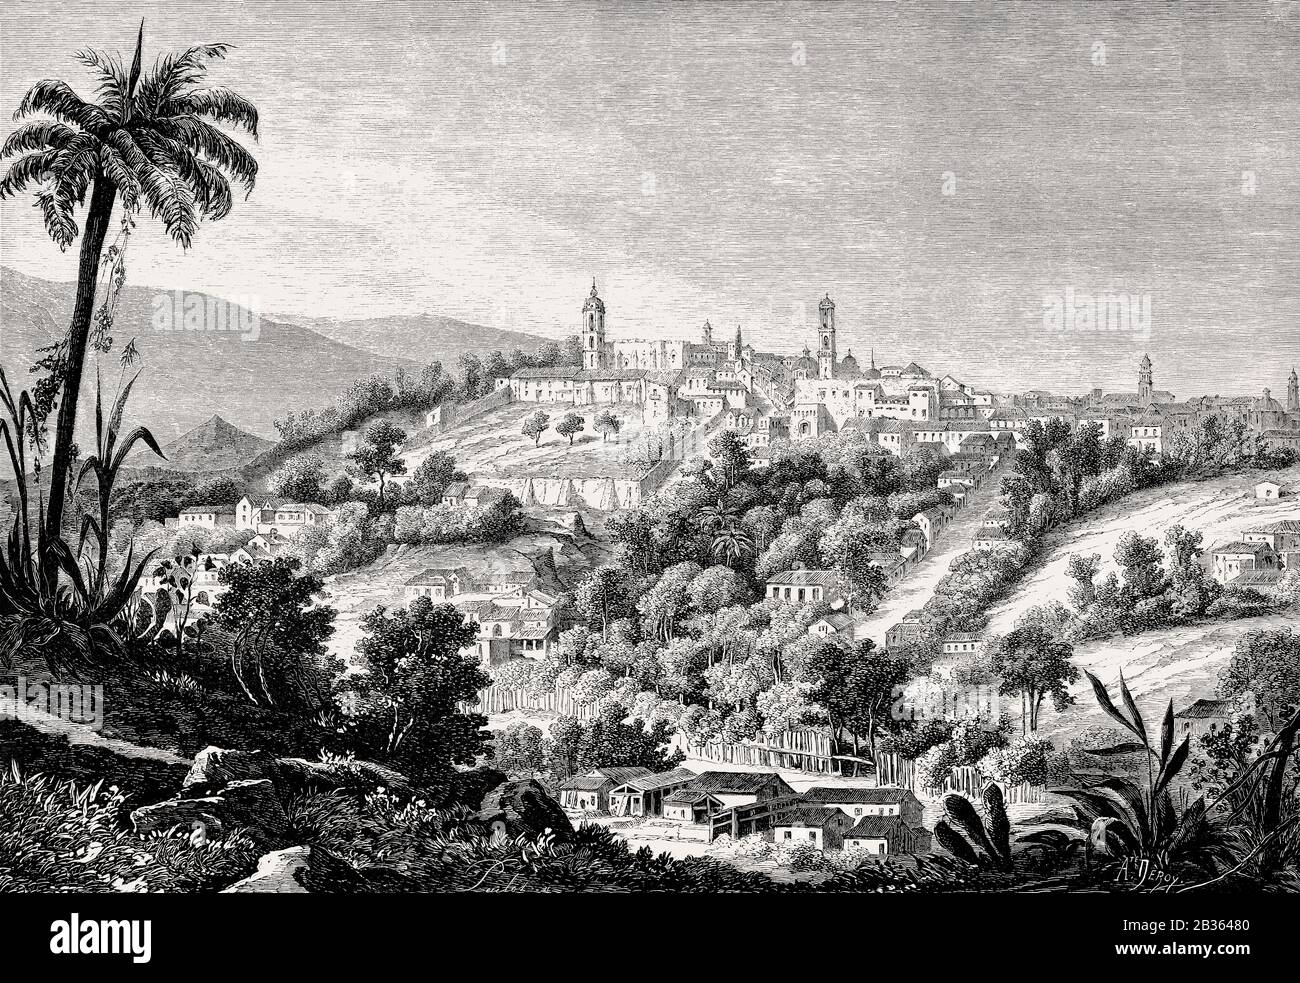 Jalapa, República de Guatemala, Centroamérica, siglo XIX Foto de stock